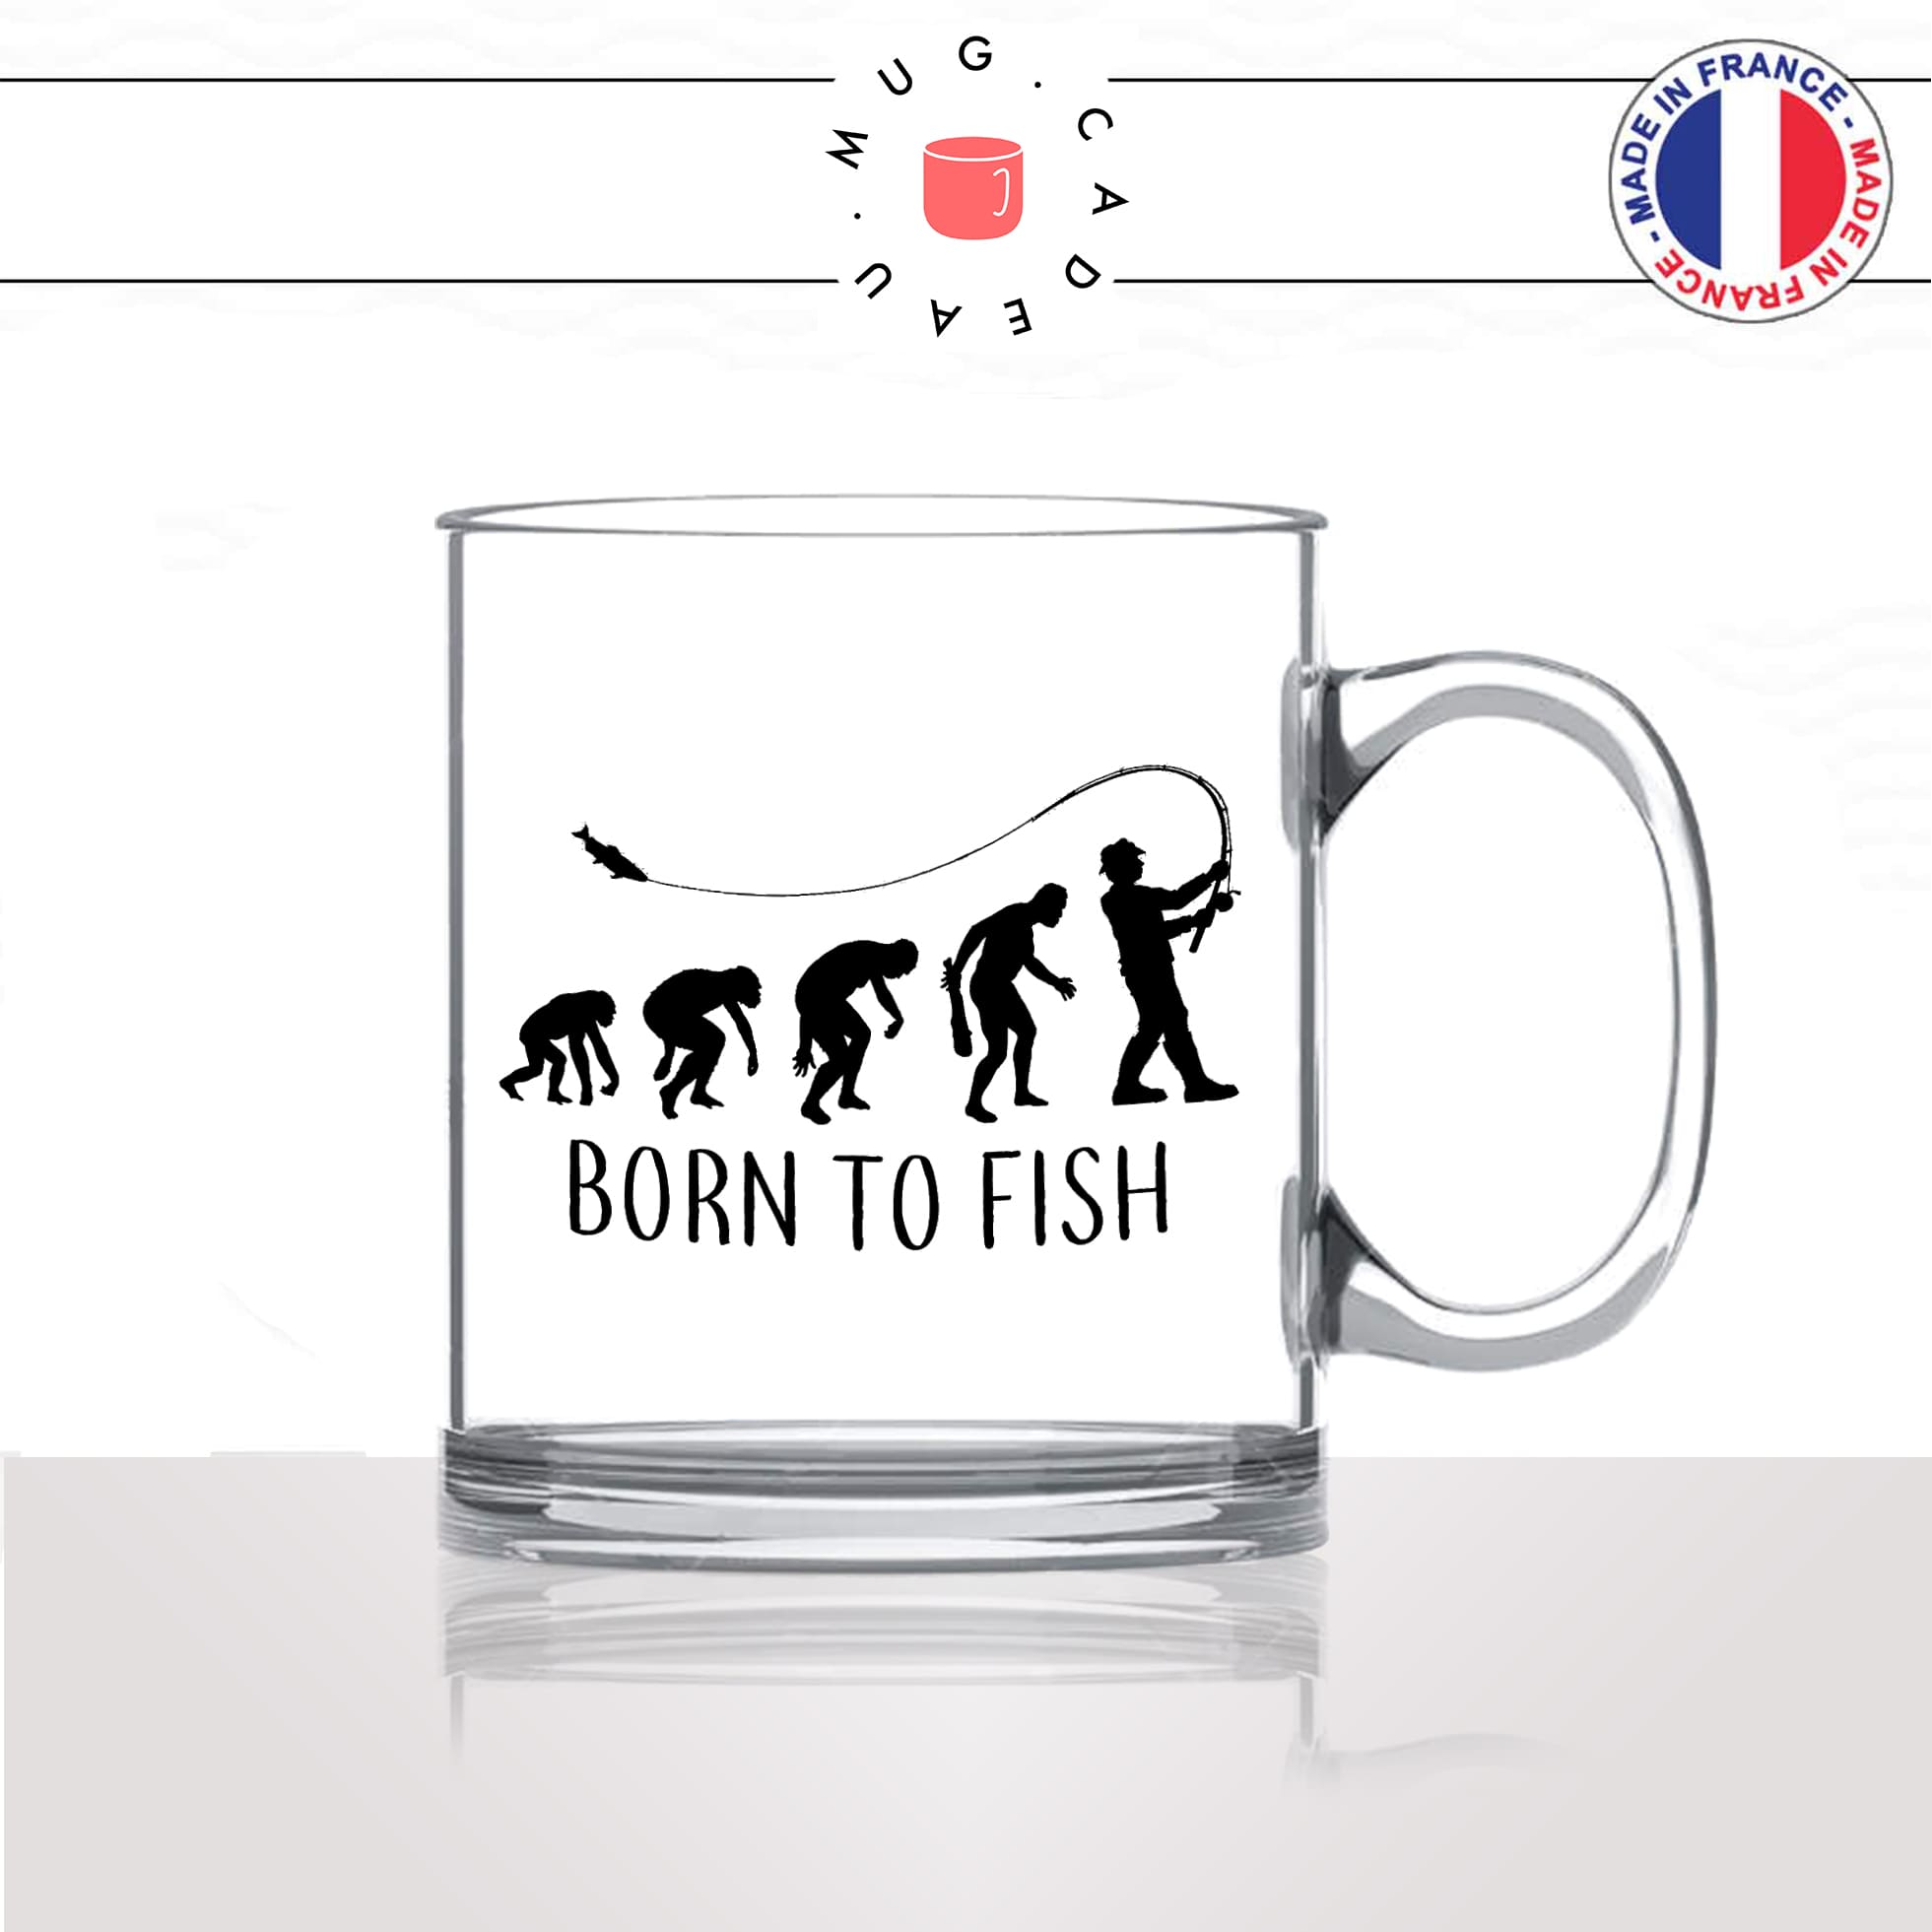 mug-tasse-en-verre-transparent-glass-born-to-fish-evolution-humaine-singe-peche-pecheur-poisson-humour-idée-cadeau-fun-cool-café-thé2